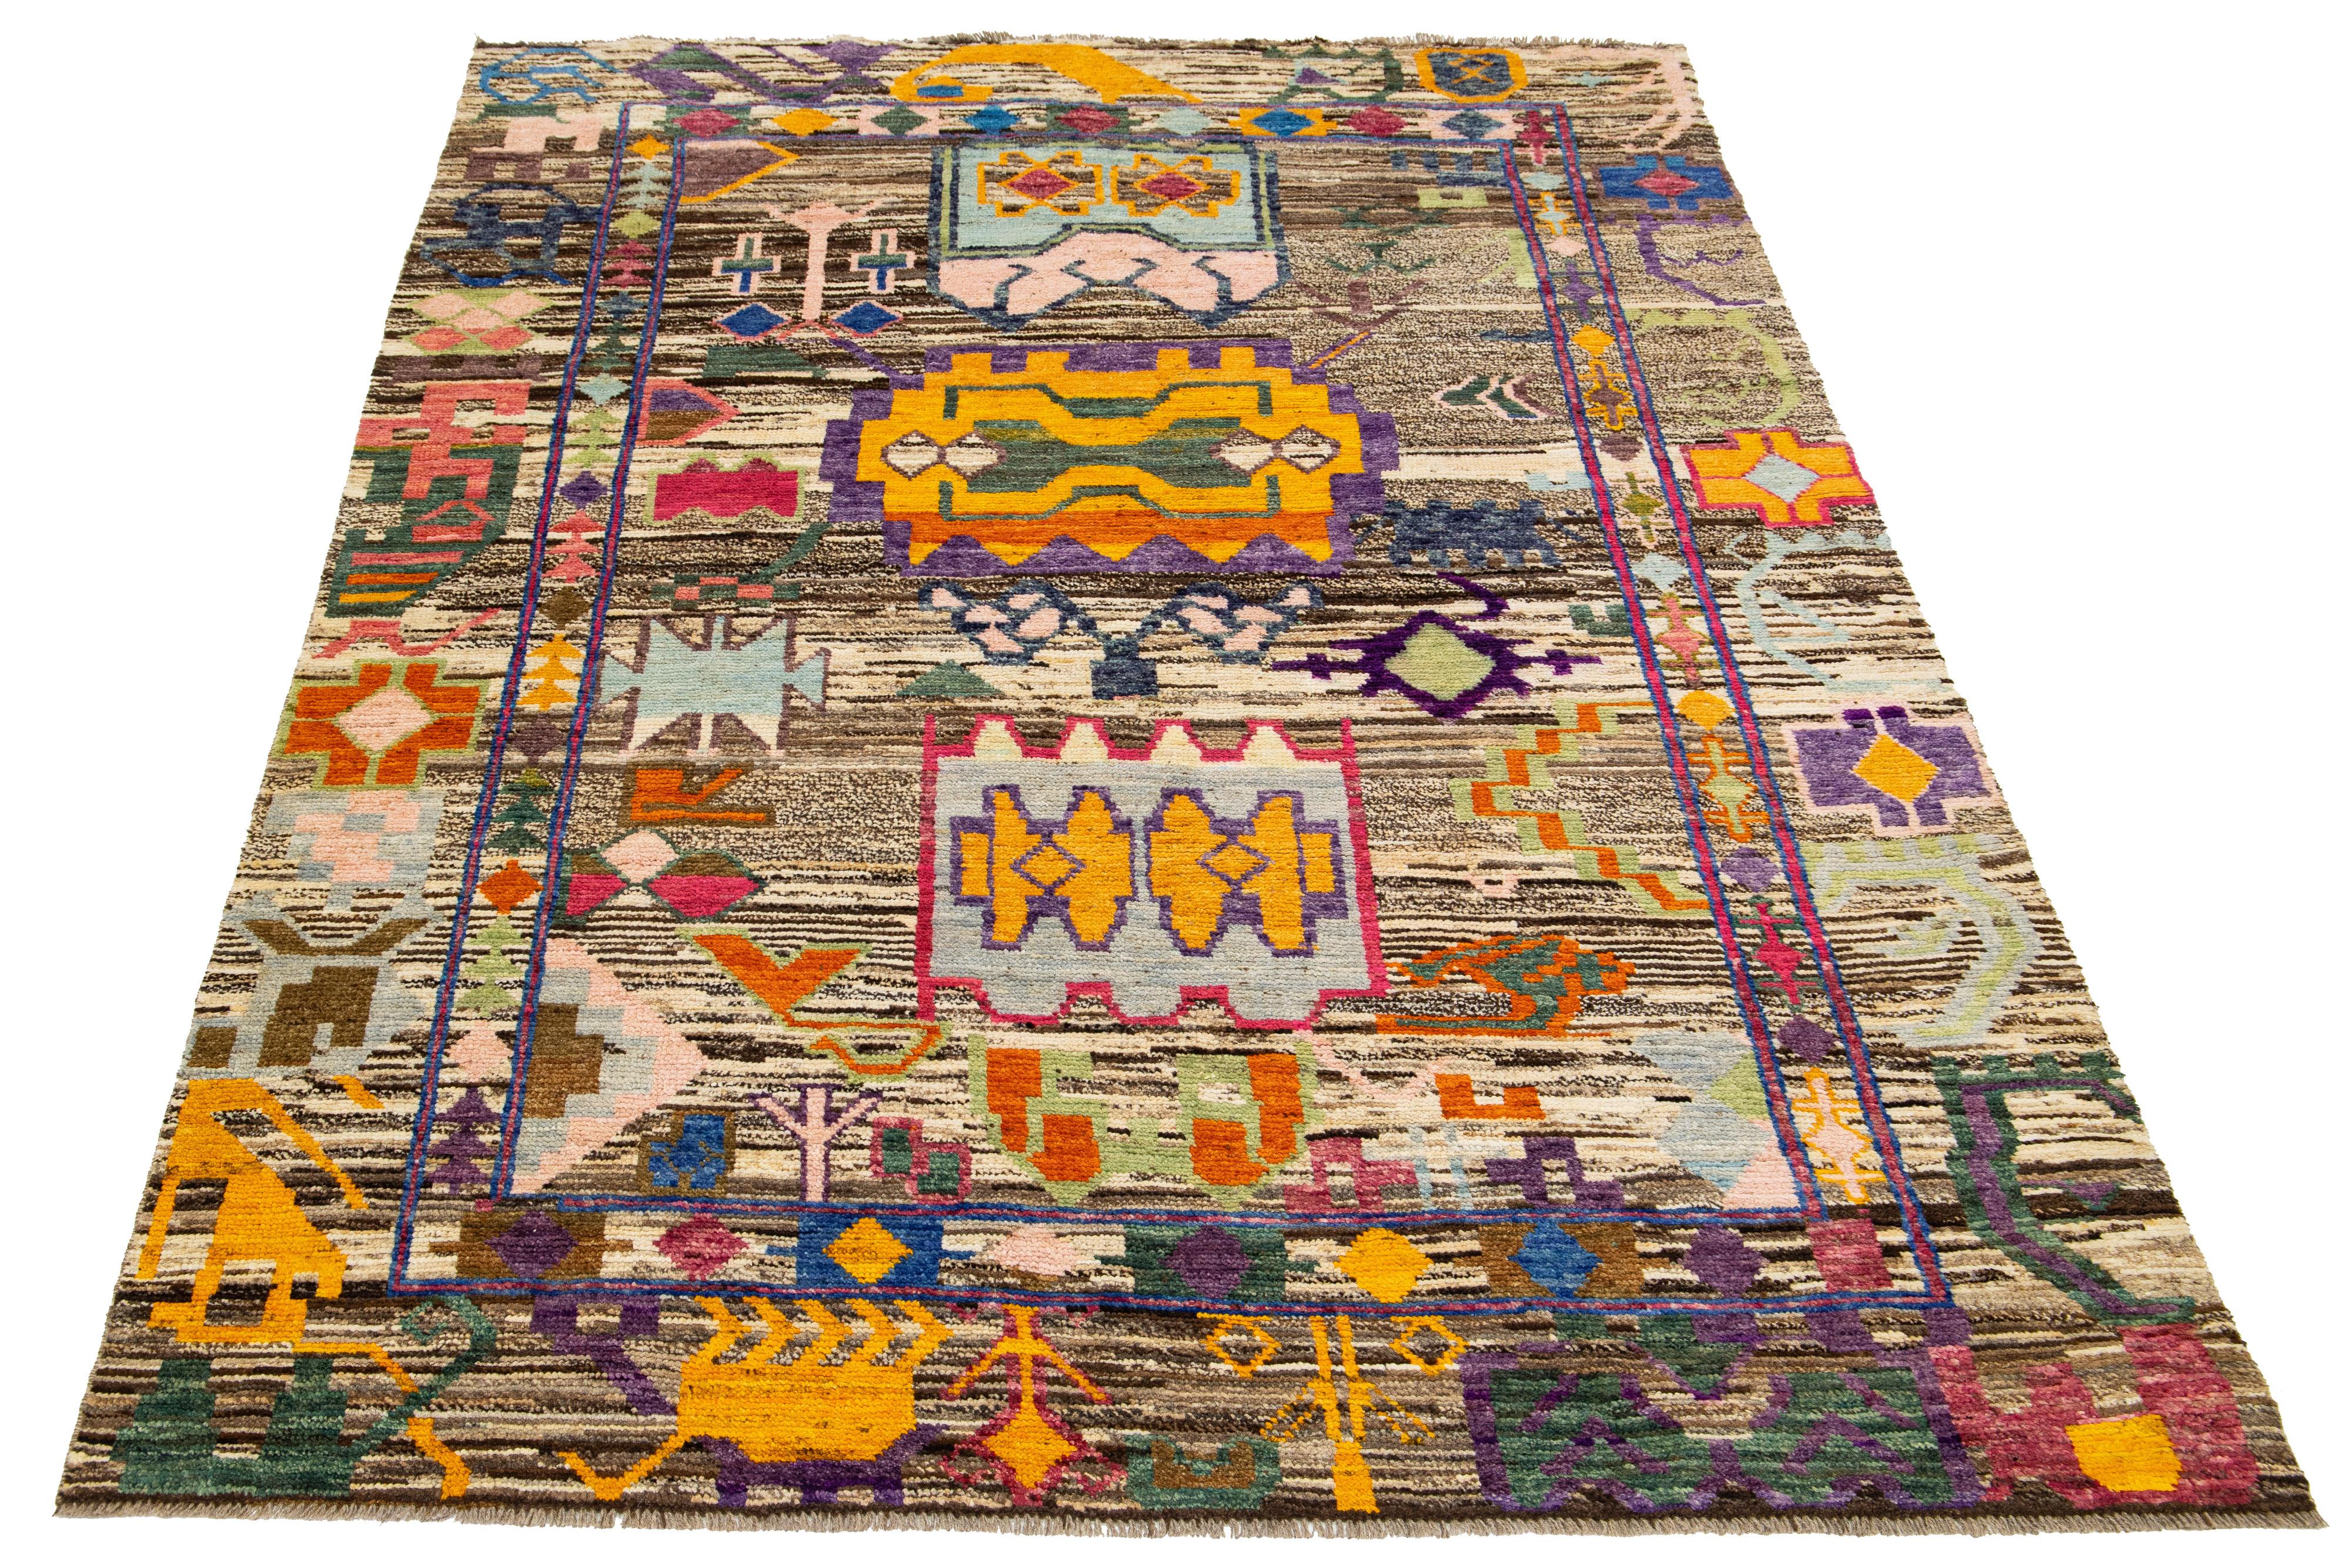 Dieser moderne Wollteppich im marokkanischen Stil besticht durch einen braunen Hintergrund mit mehrfarbigen Blumen, die in einem Allover-Muster gestaltet sind.

Dieser Teppich misst 5'9